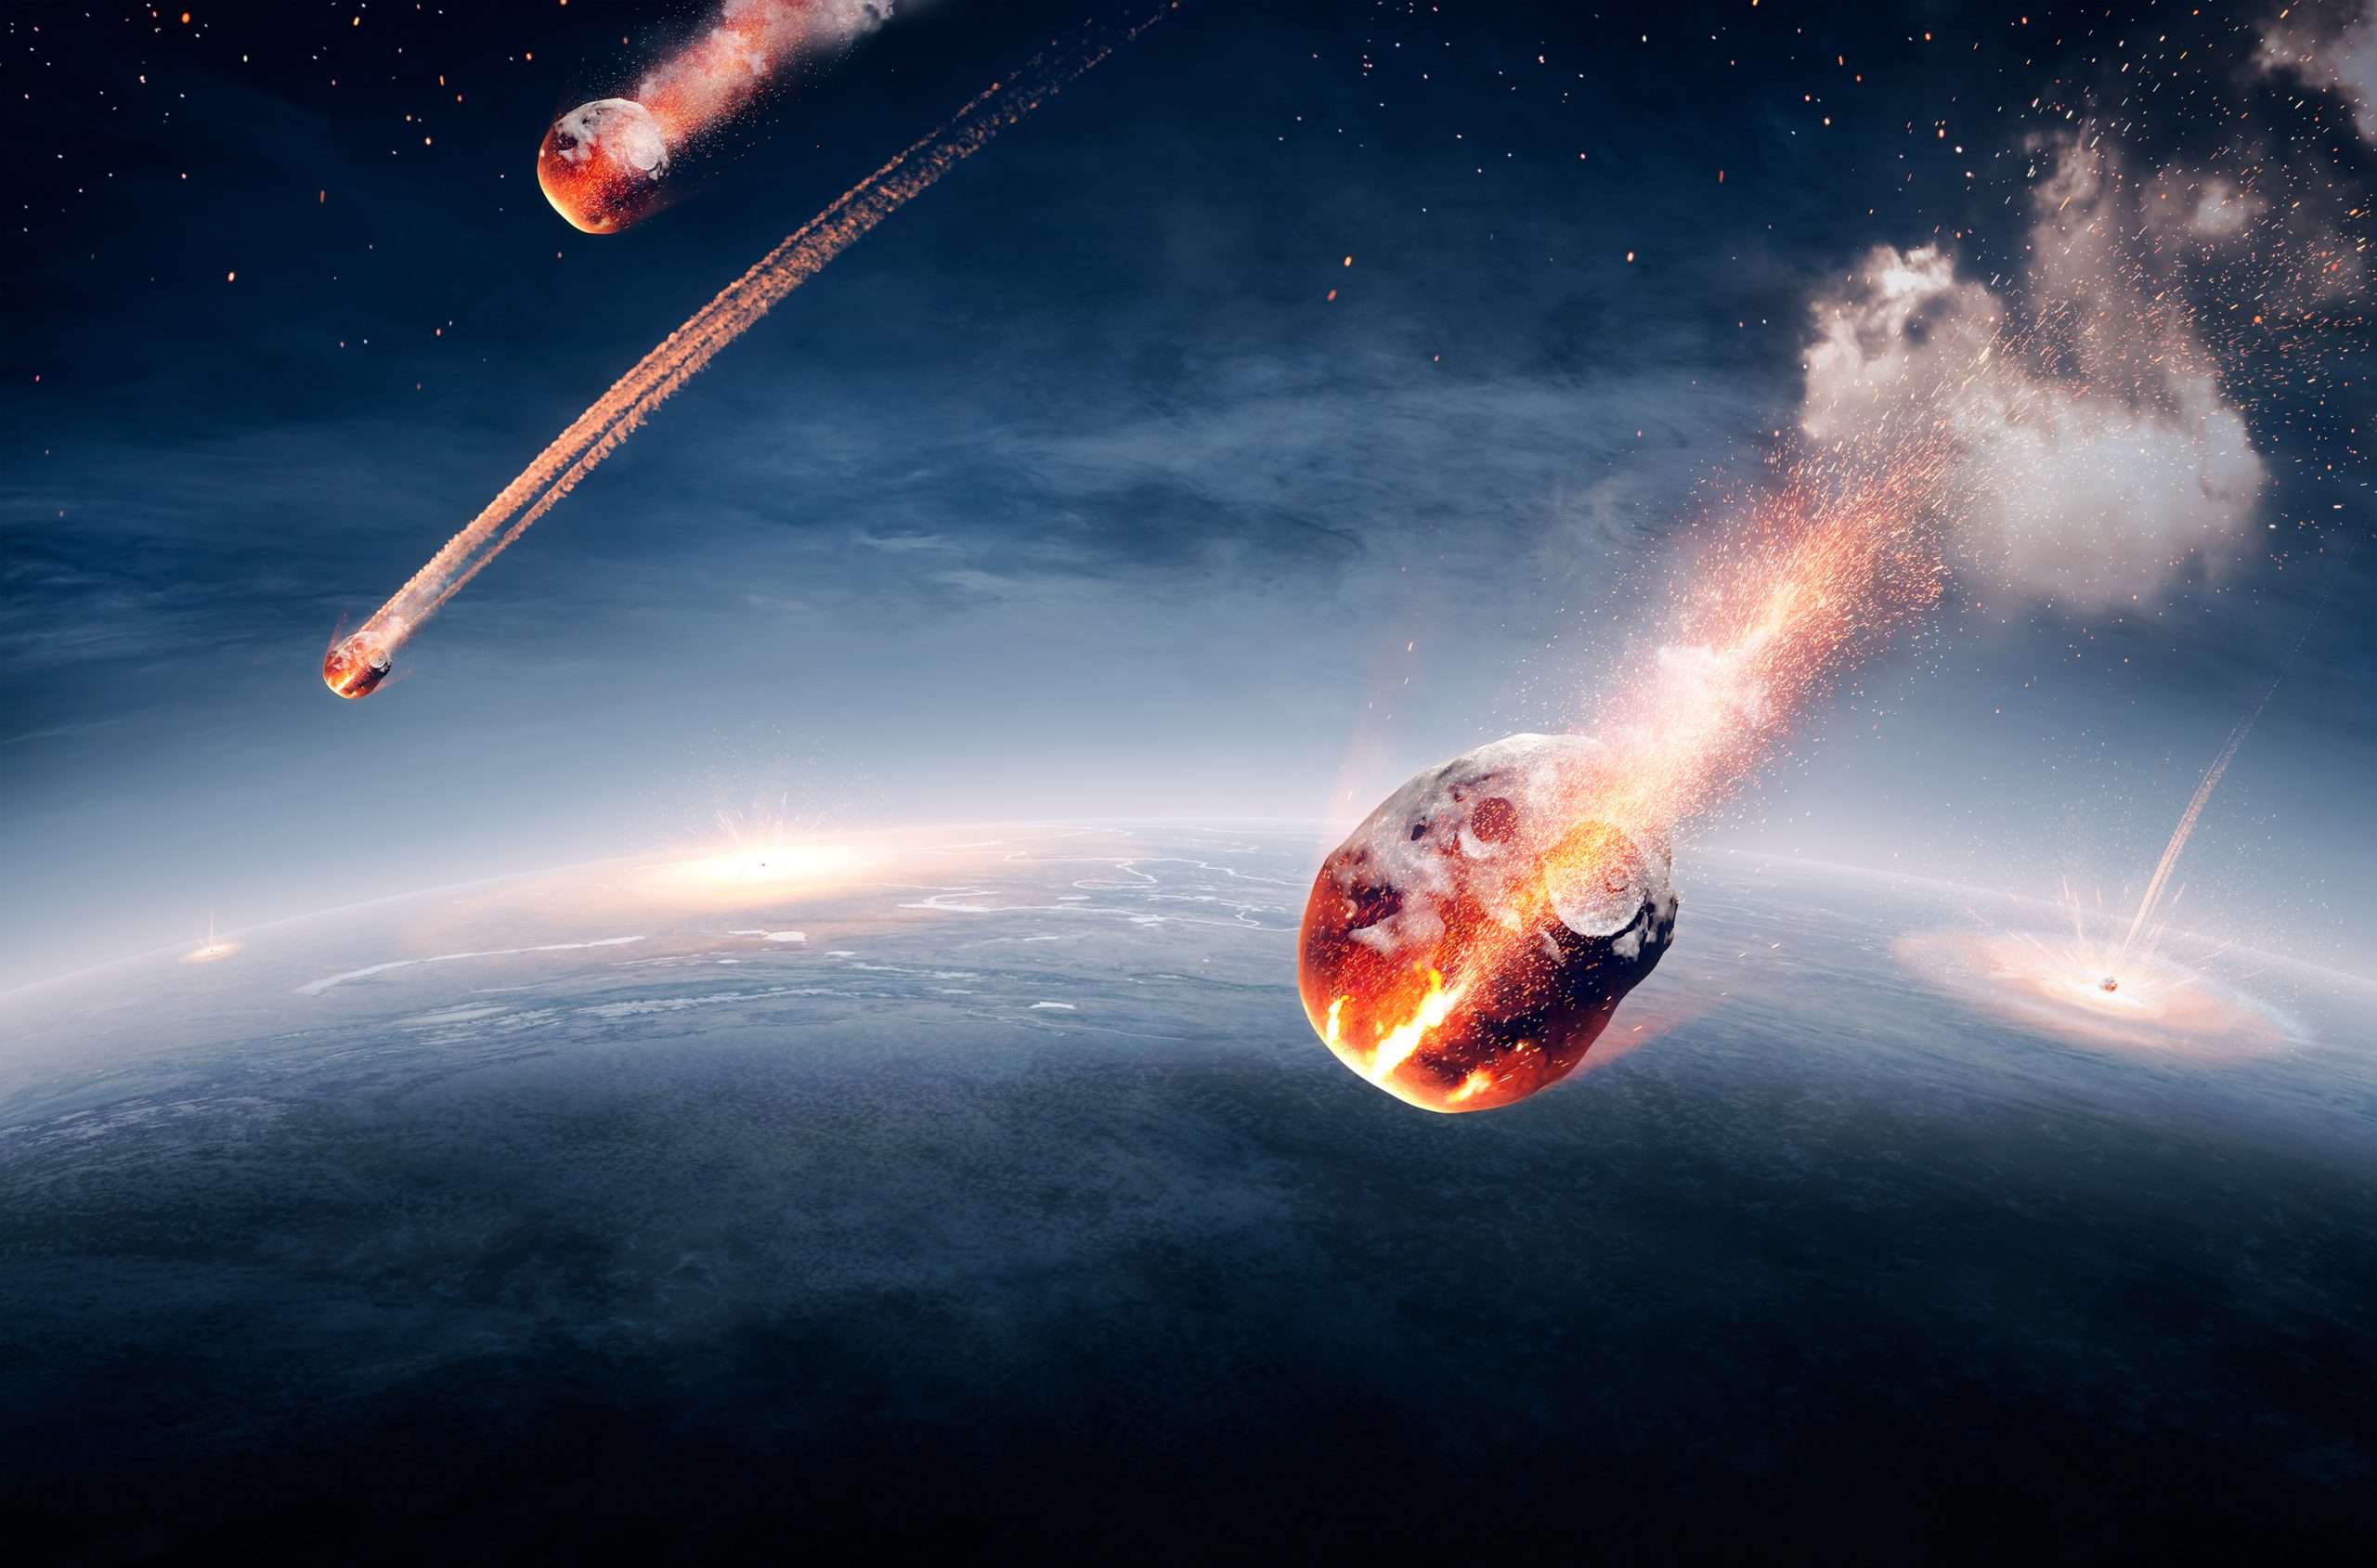 När svenska företaget Tele 2 fejkade ett meteoritnedslag i Lettland